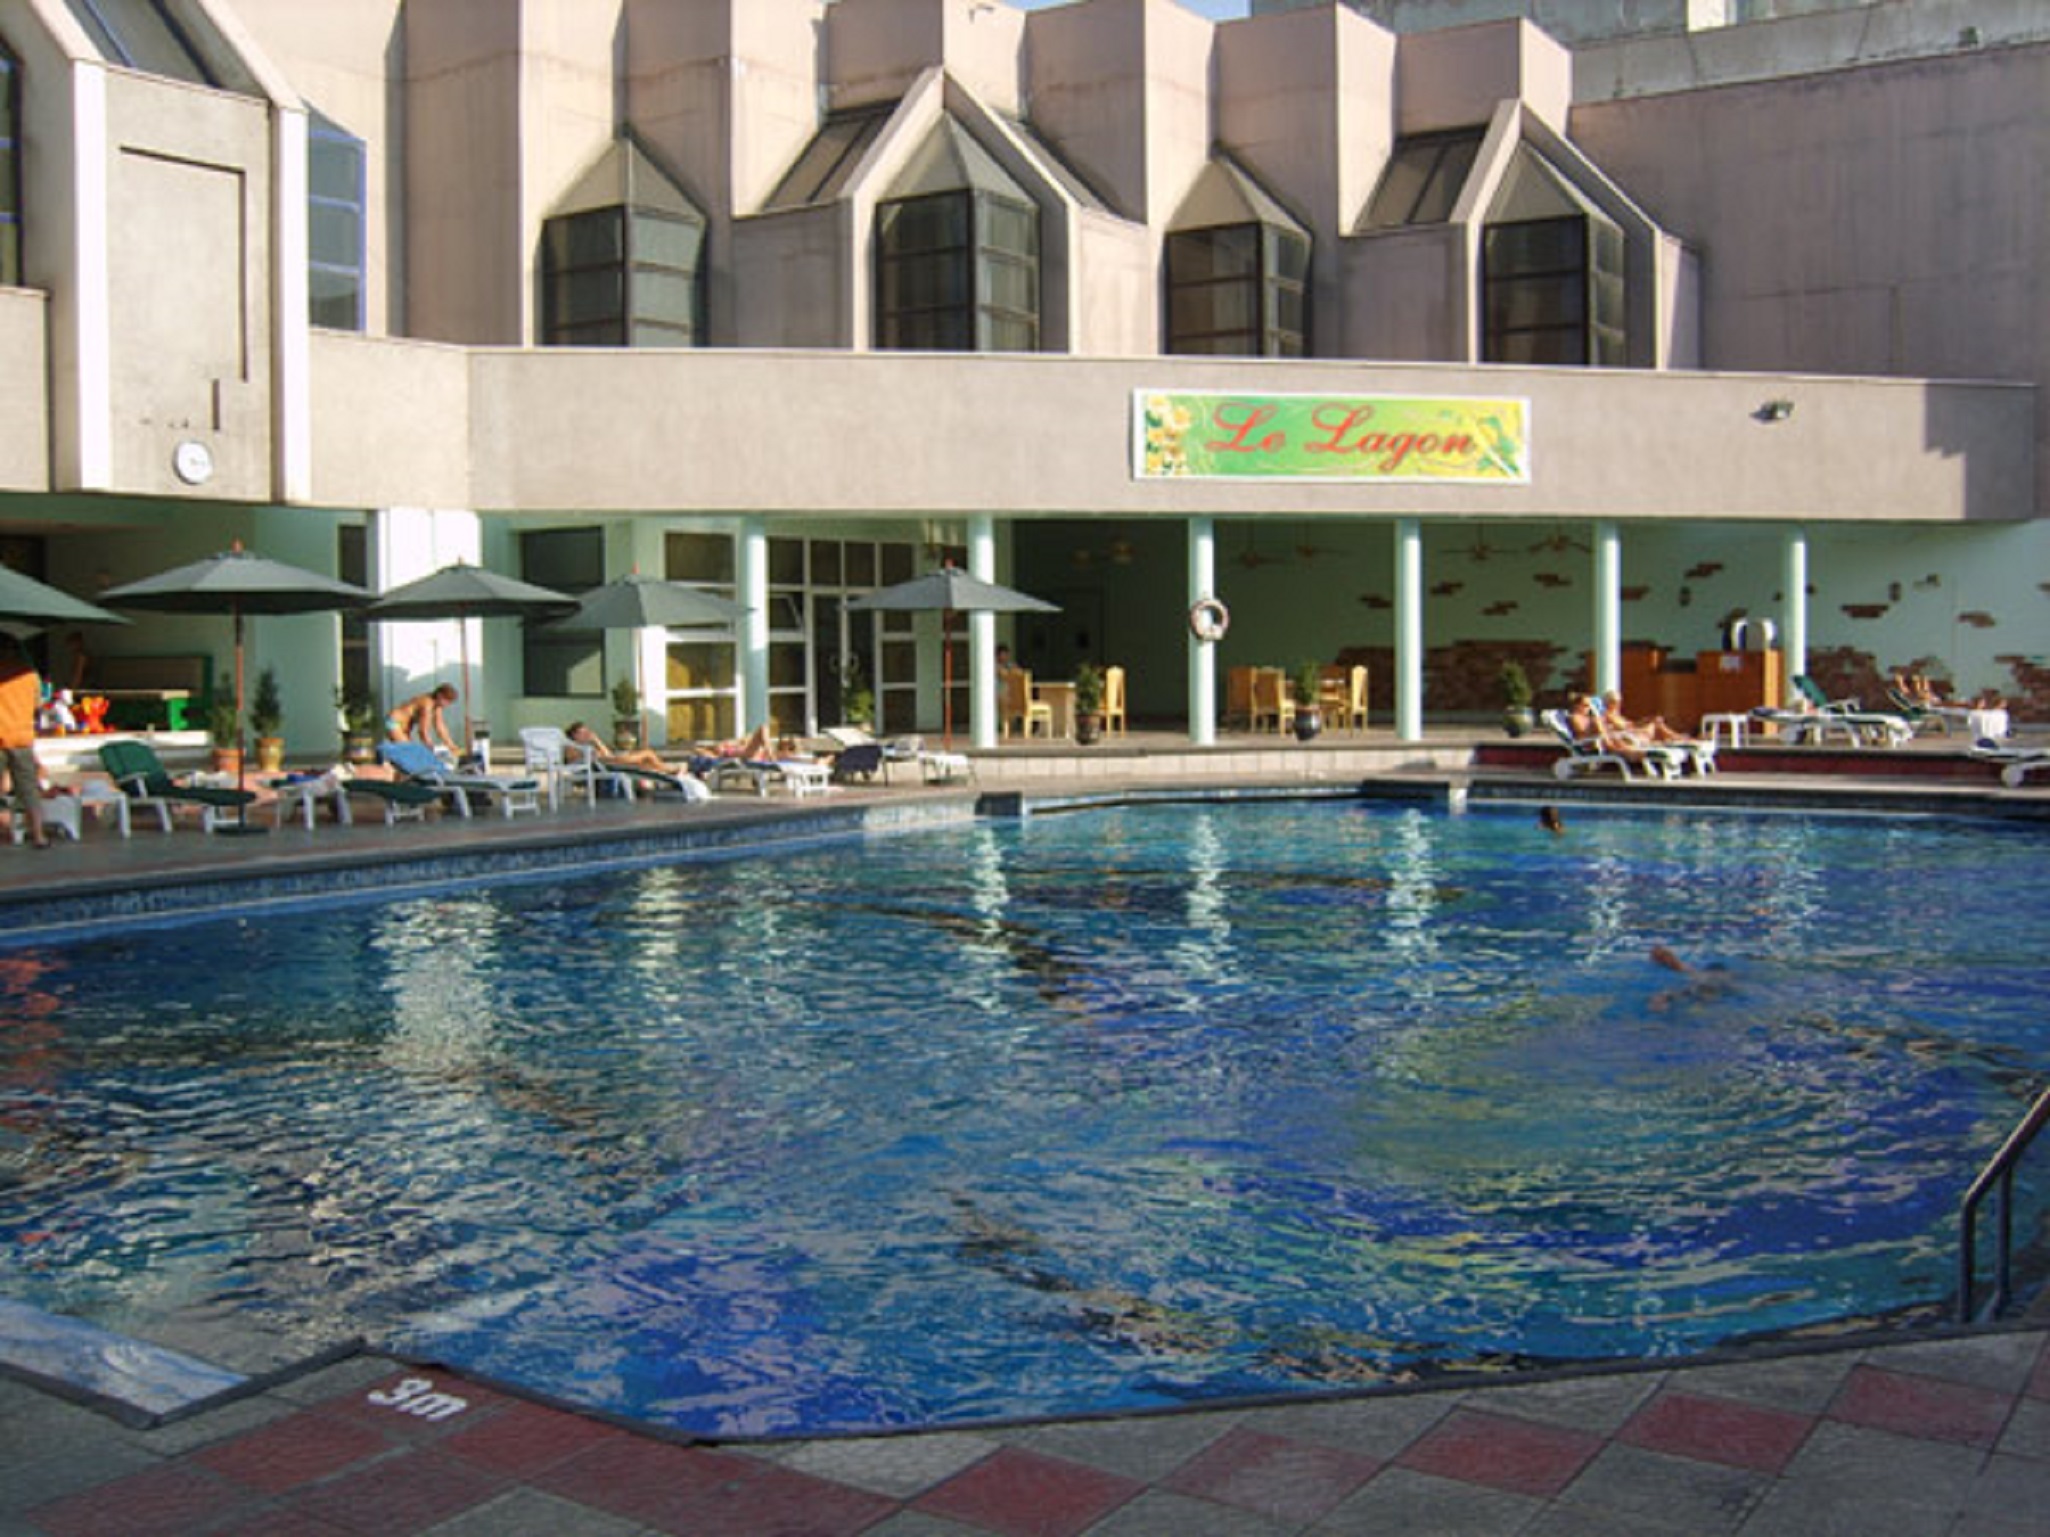 Le Grande Plaza Hotel image